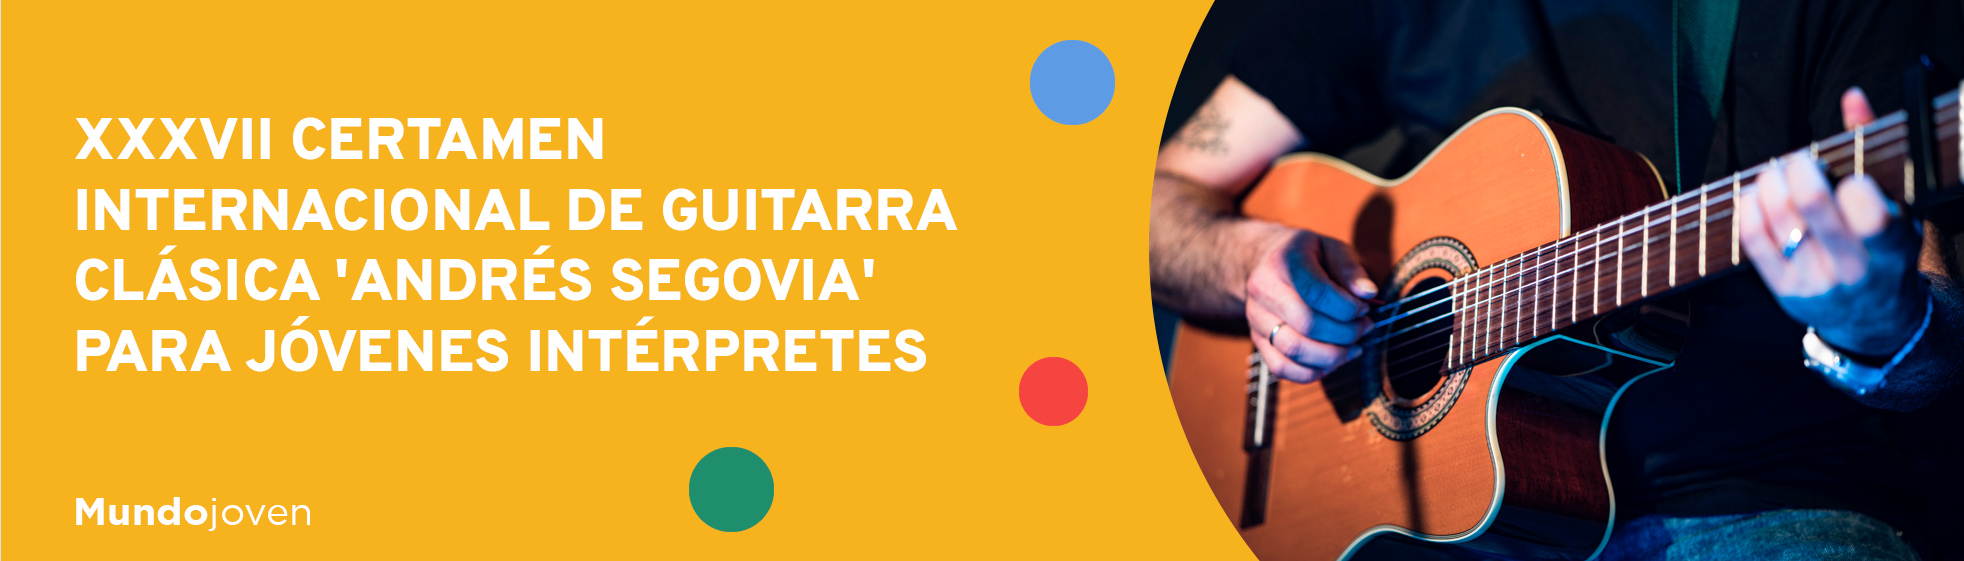 XXXVII Certamen Internacional de Guitarra Clásica 'Andrés Segovia' para jóvenes intérpretes